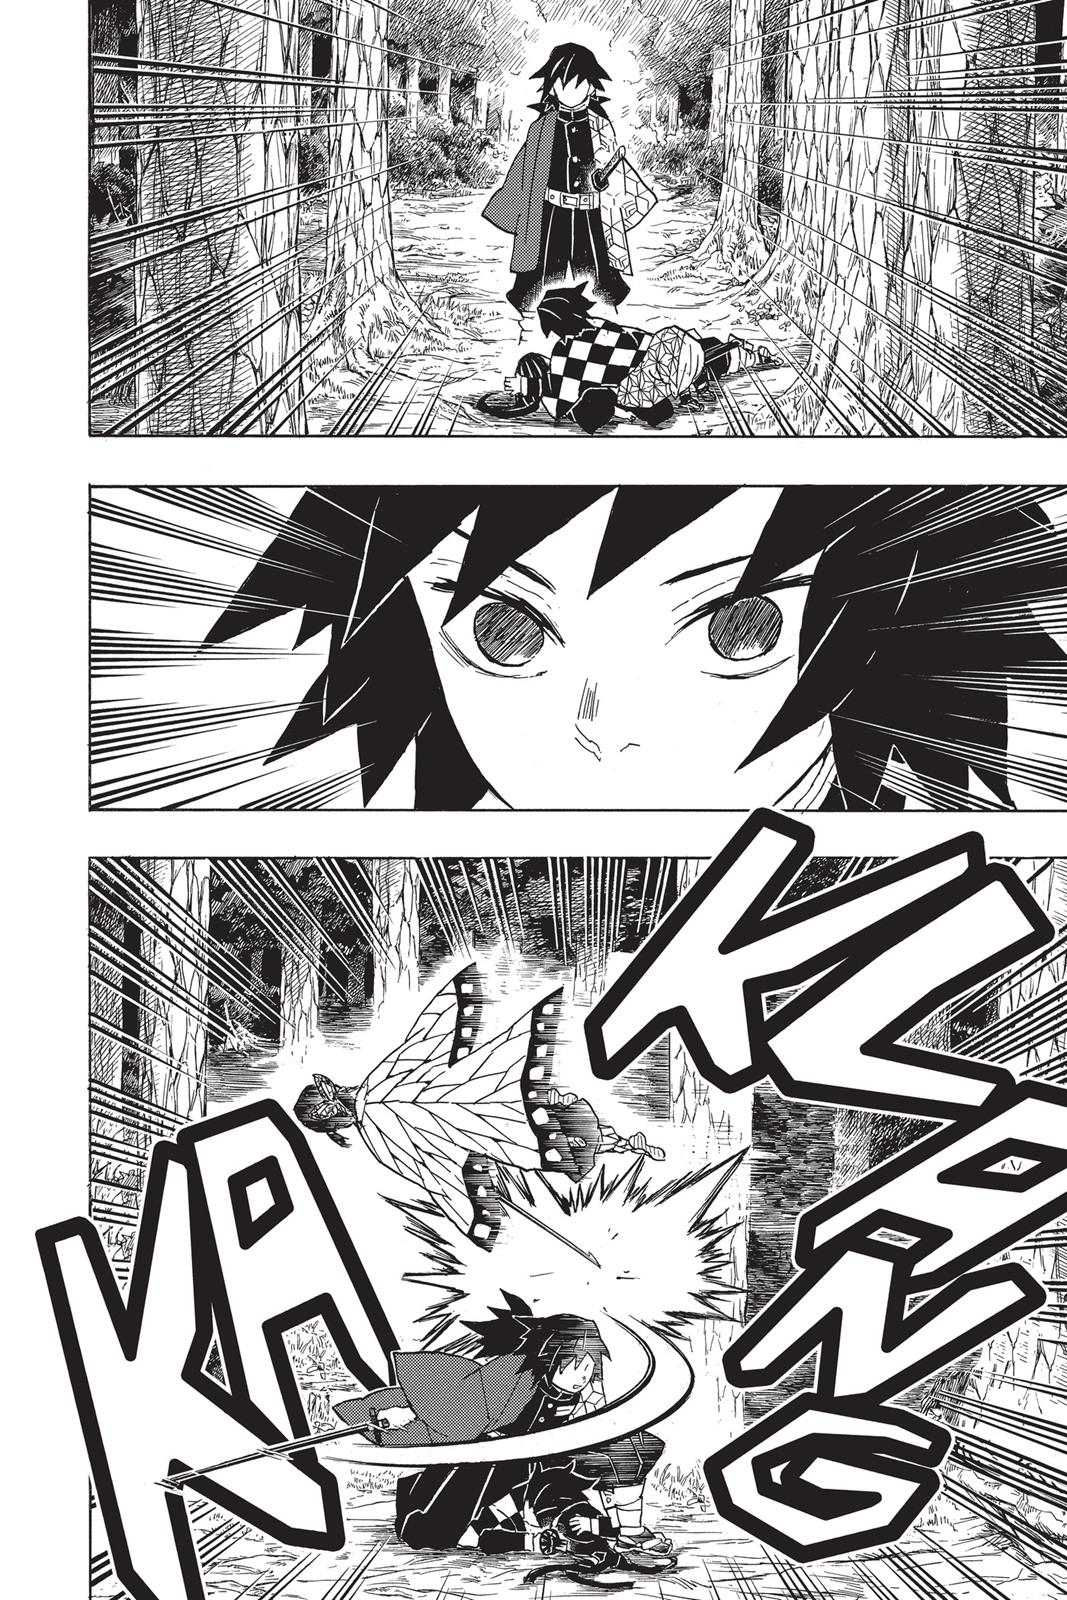 Demon Slayer Manga Manga Chapter - 43 - image 18